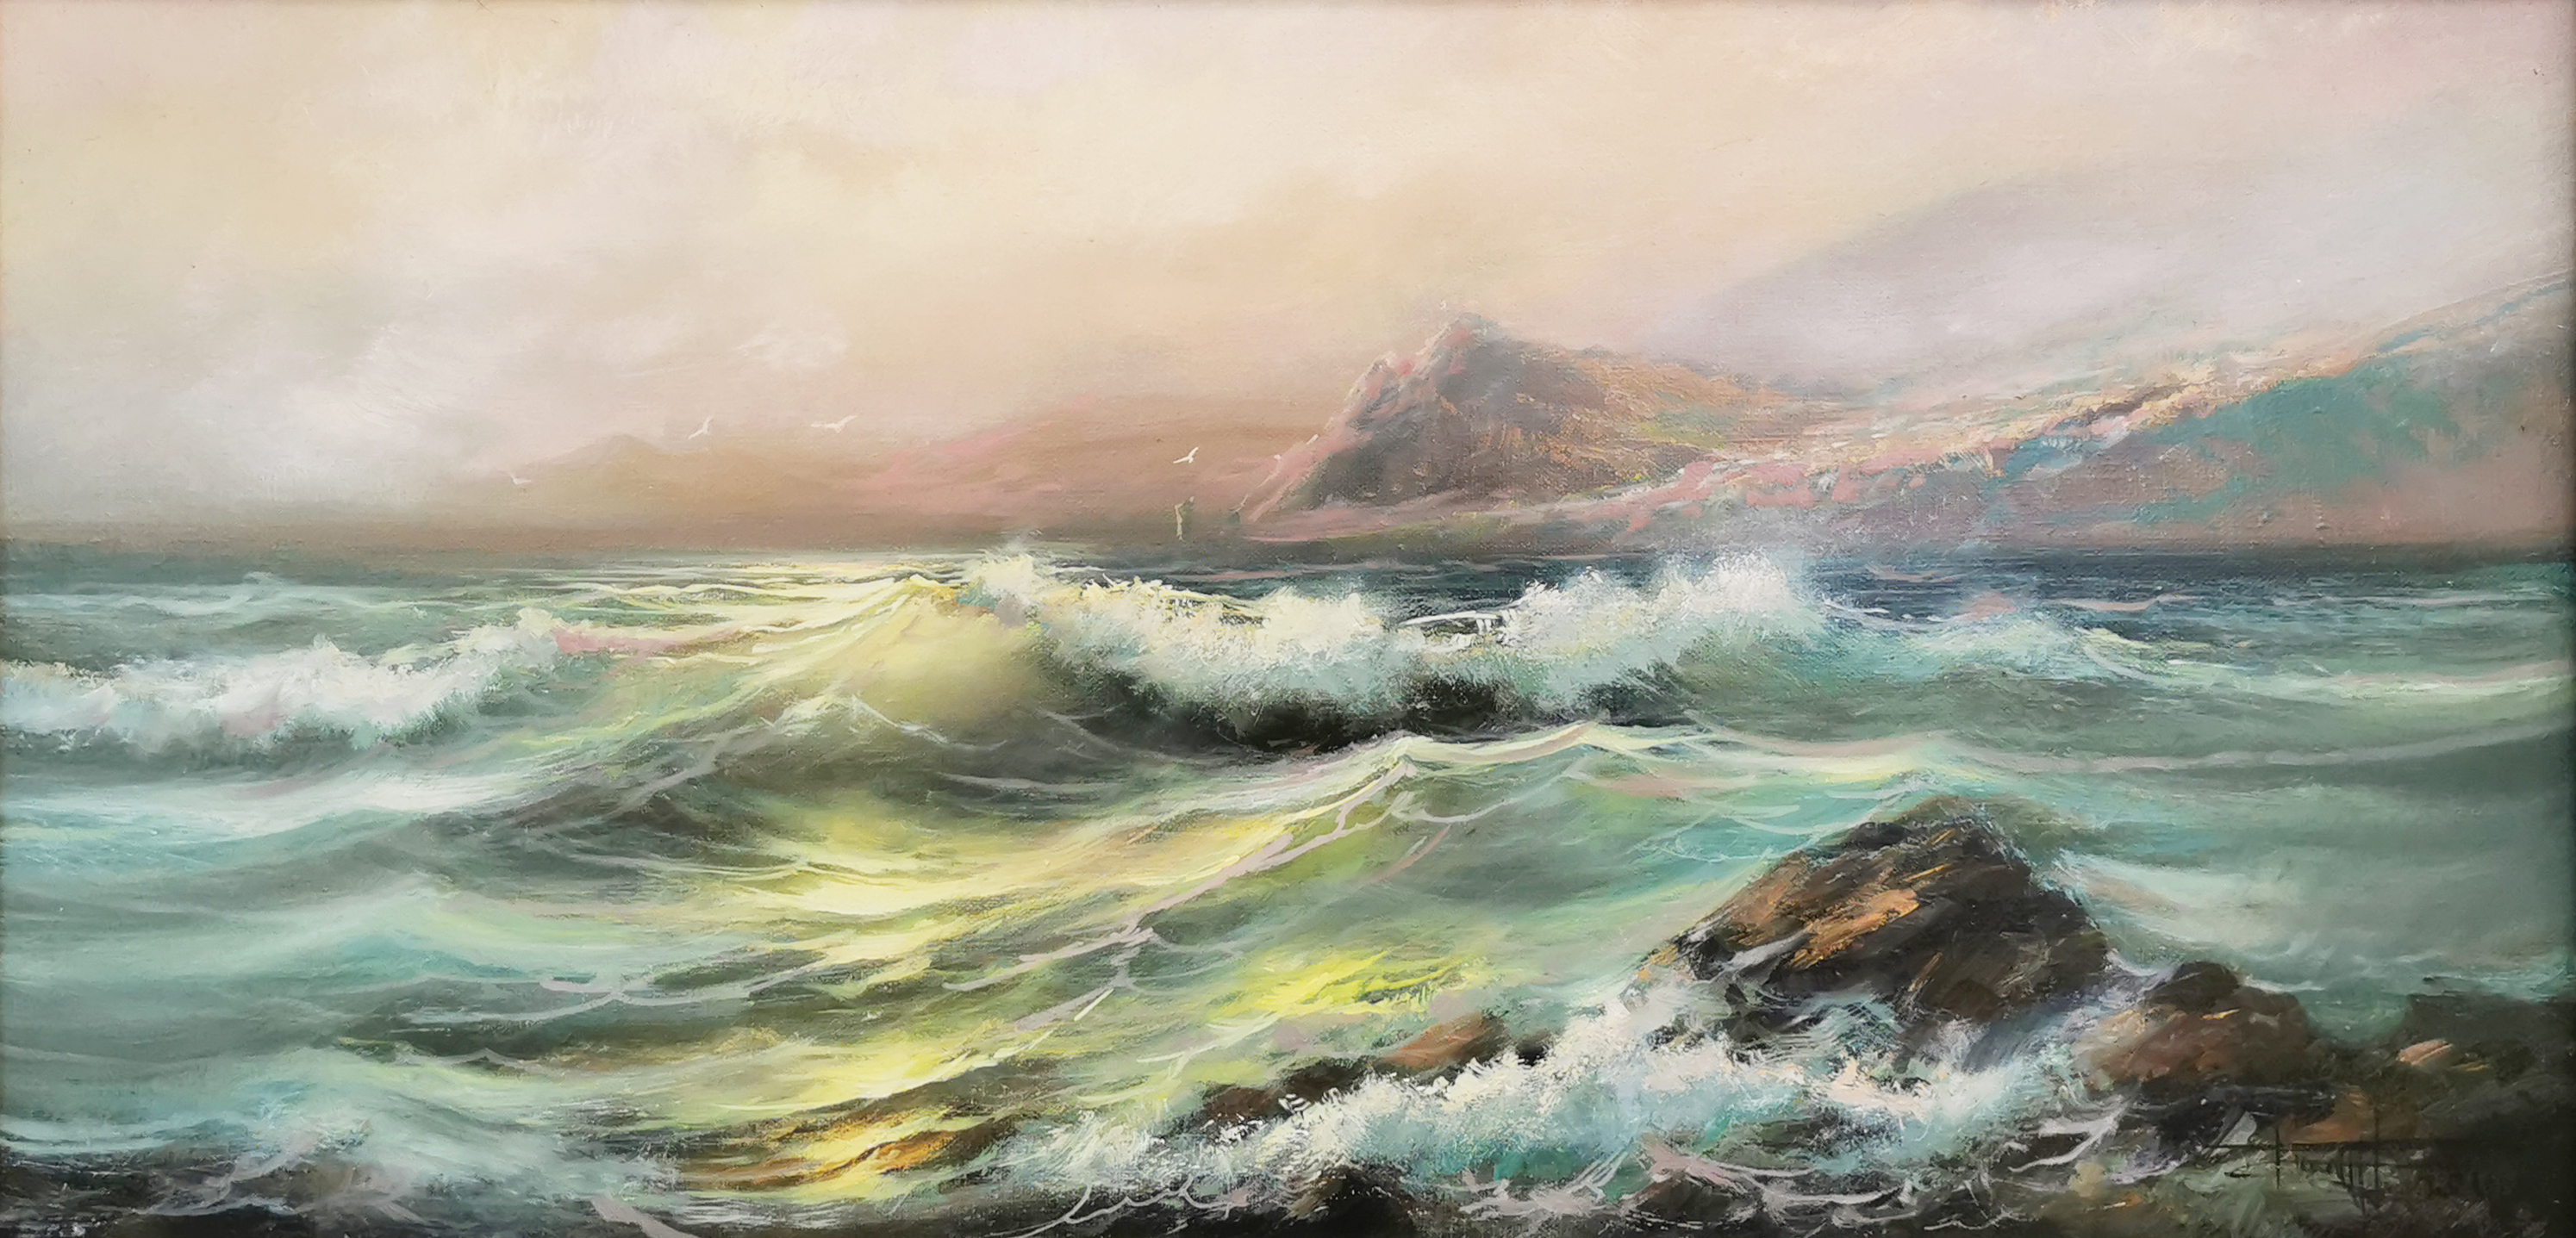 Surf - 1, Dmitry Balakhonov, Buy the painting Oil